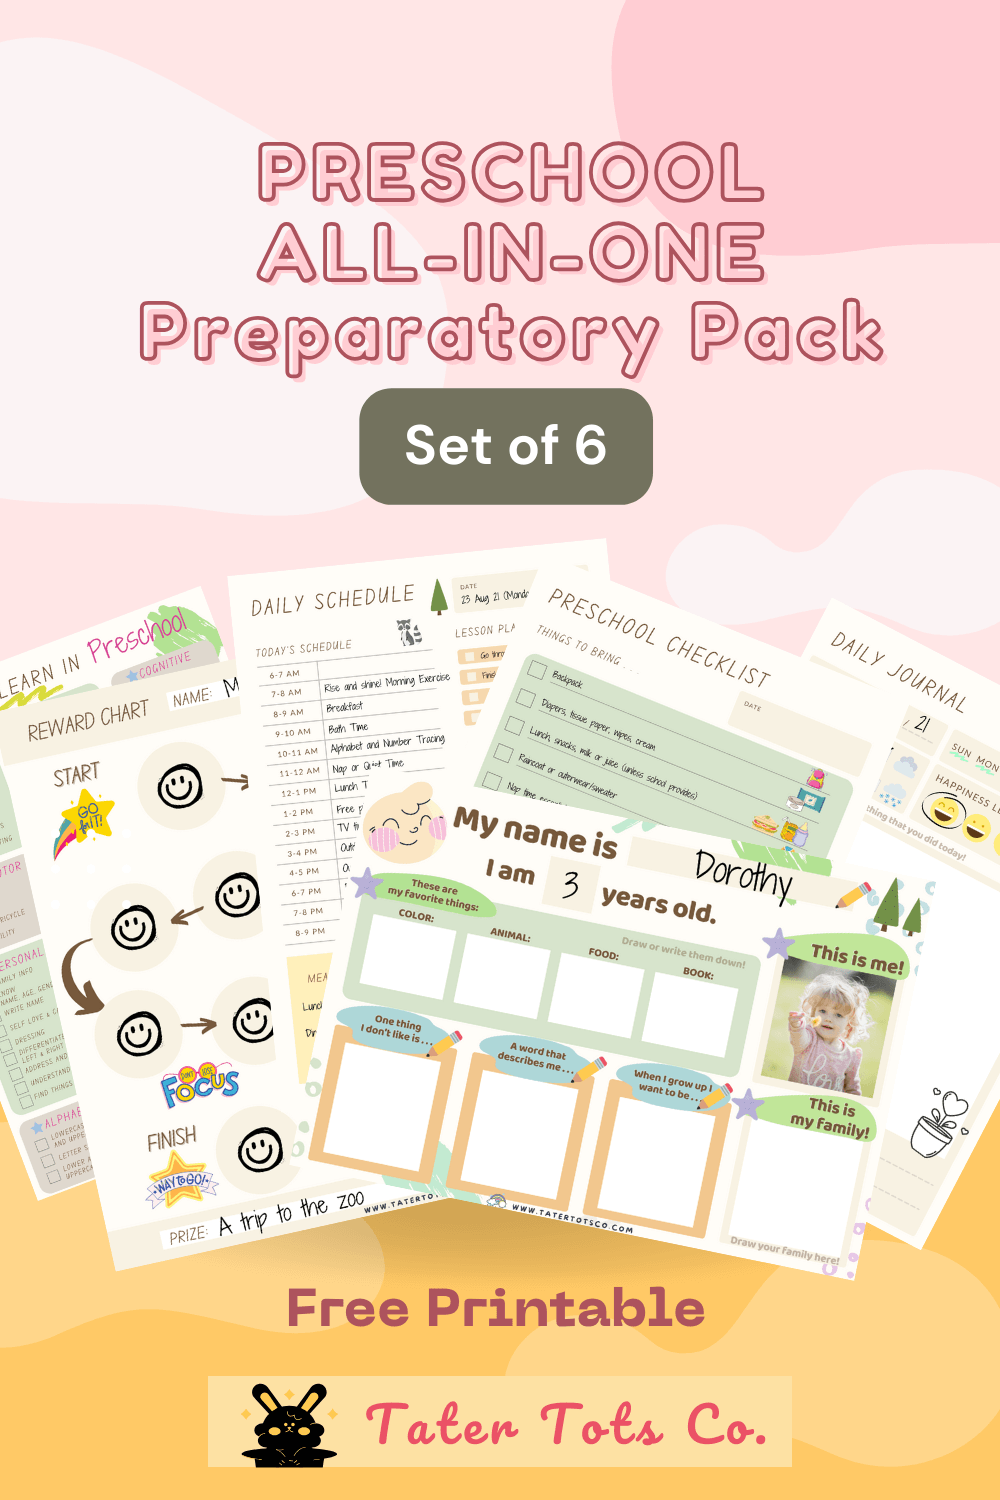 preschool preparatory pack free printables